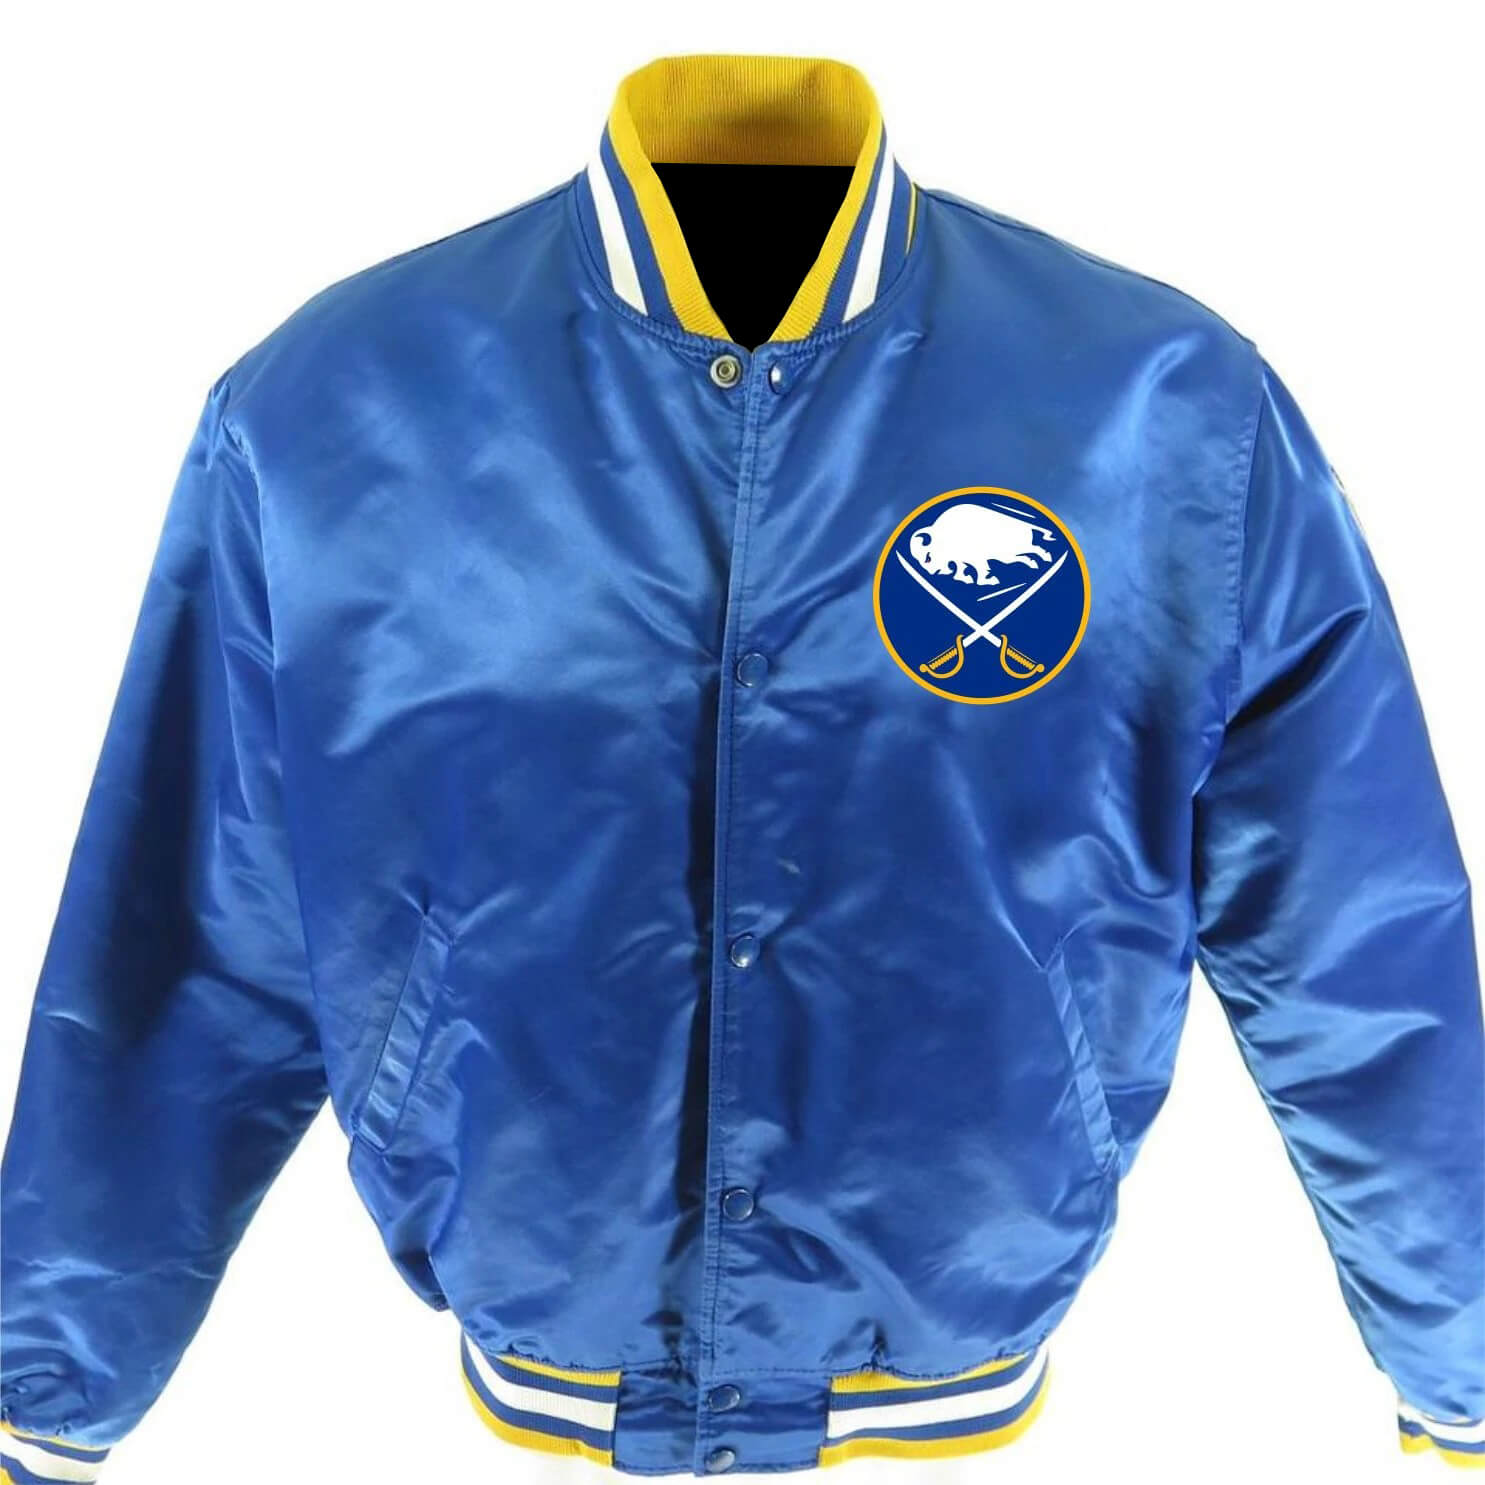 STARTER, Jackets & Coats, Buffalo Sabres Starter Jacket Mens Medium